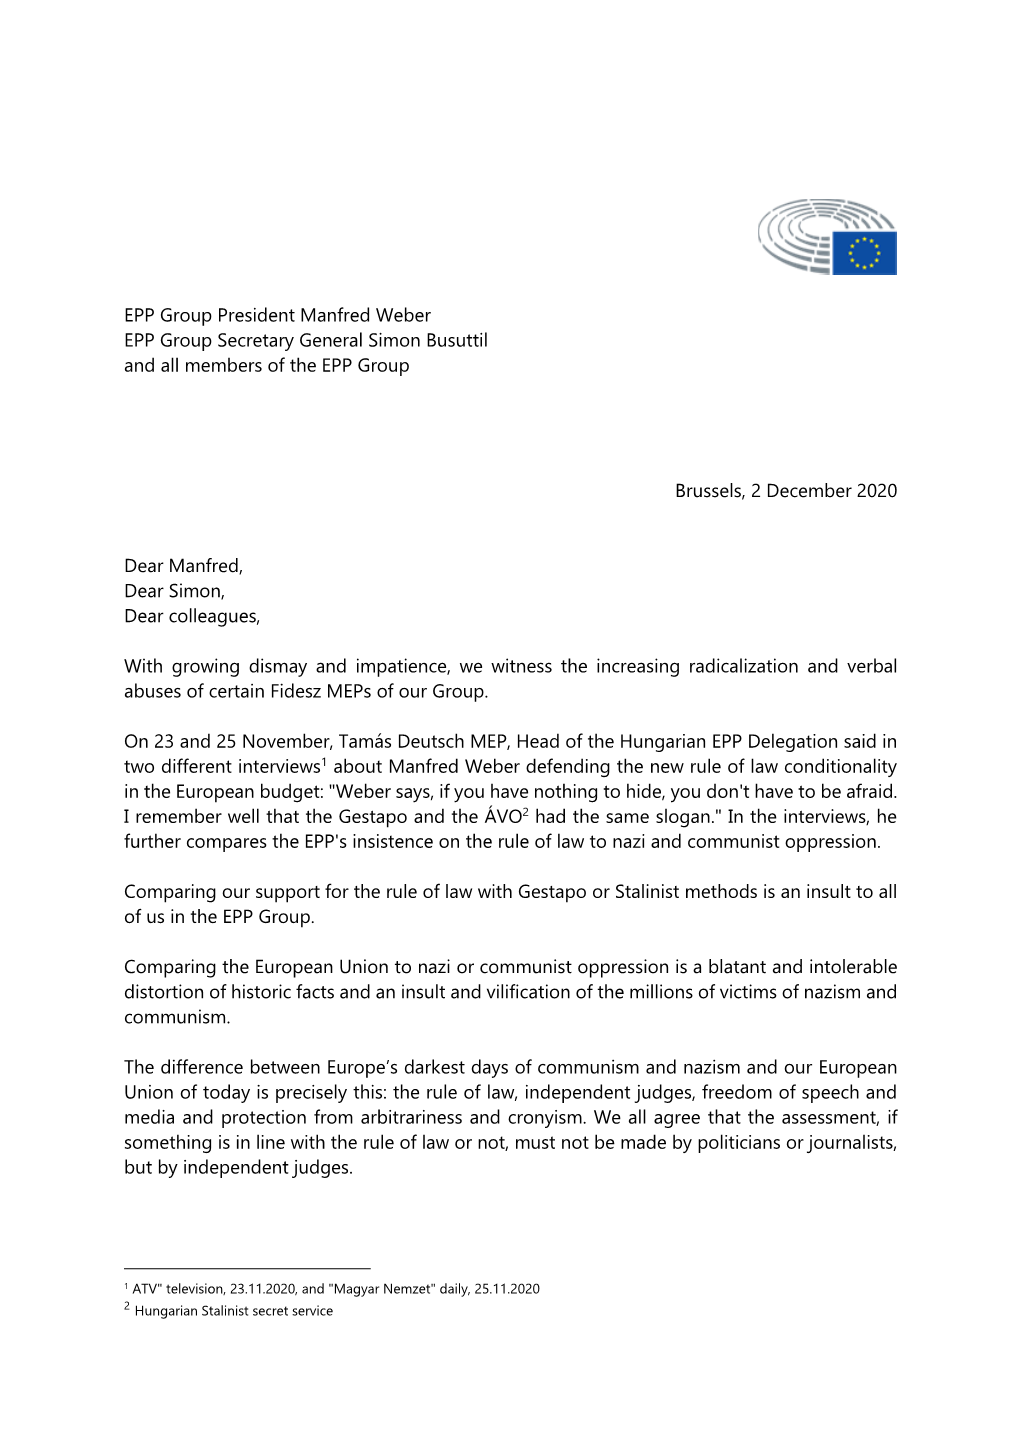 EPP Group President Manfred Weber EPP Group Secretary General Simon Busuttil and All Members of the EPP Group